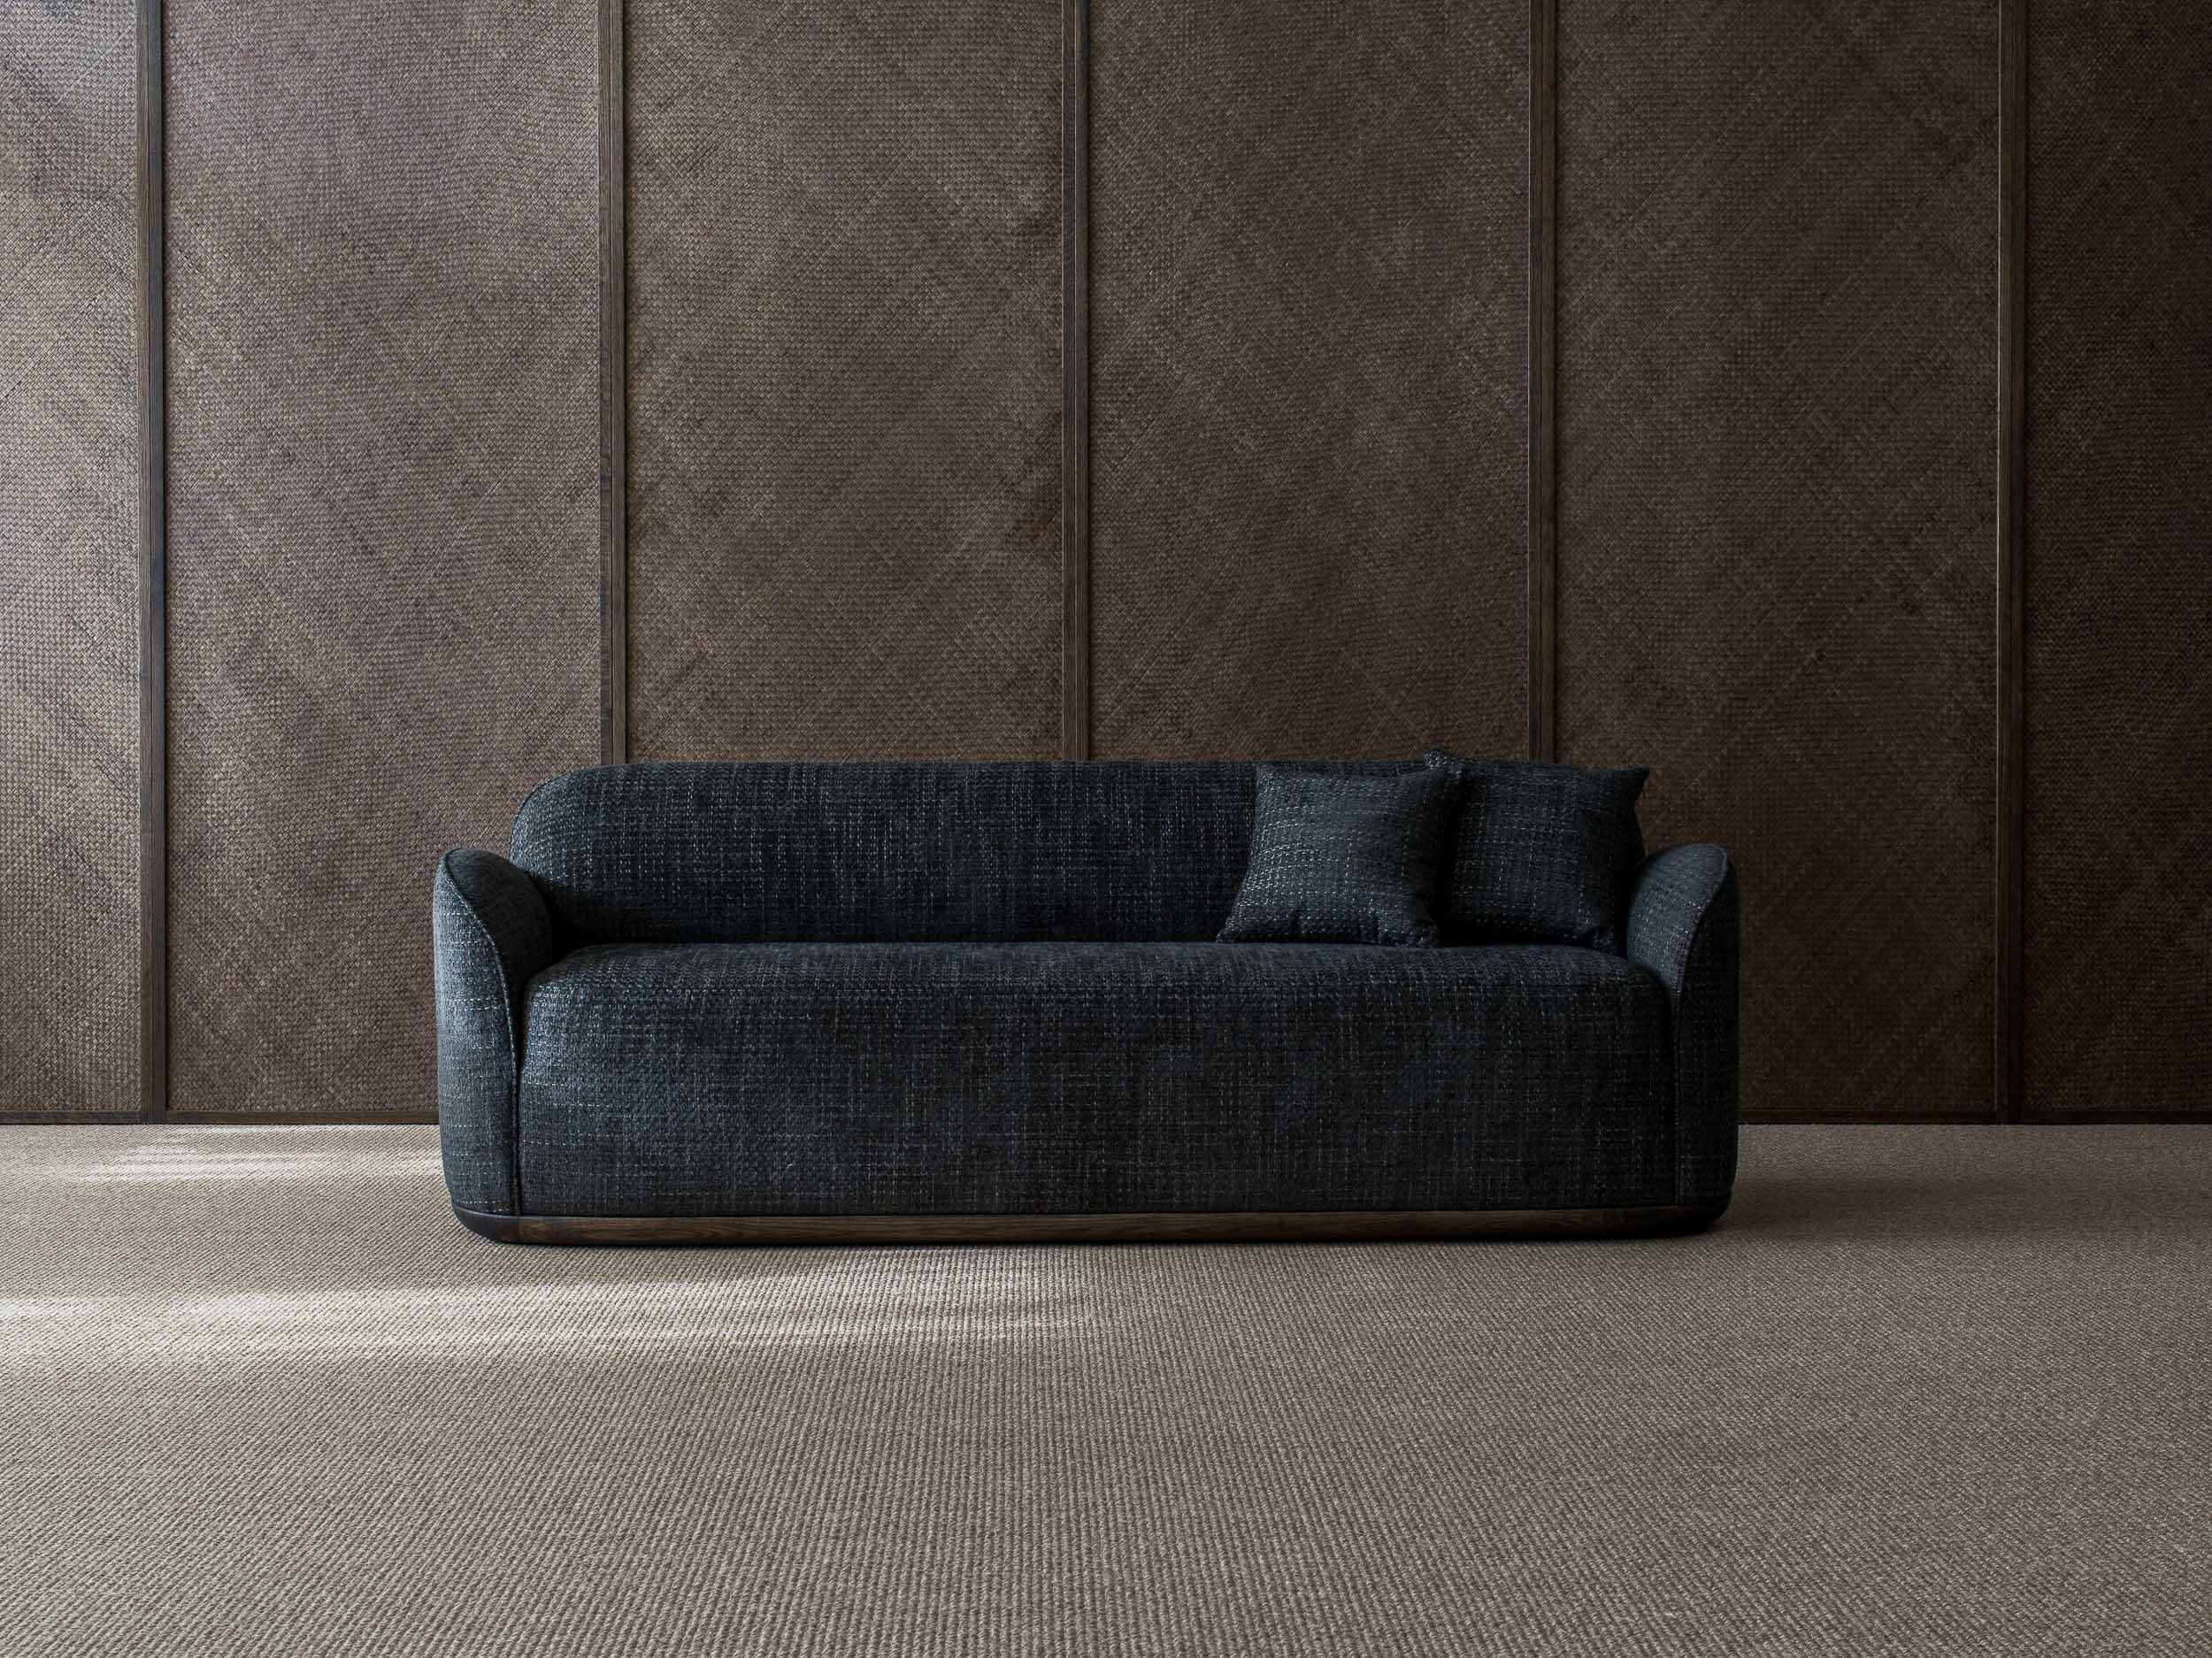 Unio 3 - sitzendes sofa von Poiat 
Entwerfer: Timo Mikkonen & Antti Rouhunkoski 

Collection UNIO 2021

Abmessungen: H. 72 x B. 200 T. 72 SH. 40
Abgebildetes Modell: Kat. 1: Chivasso Yang 95
 
Mit der Unio Collection, die einen Sessel und